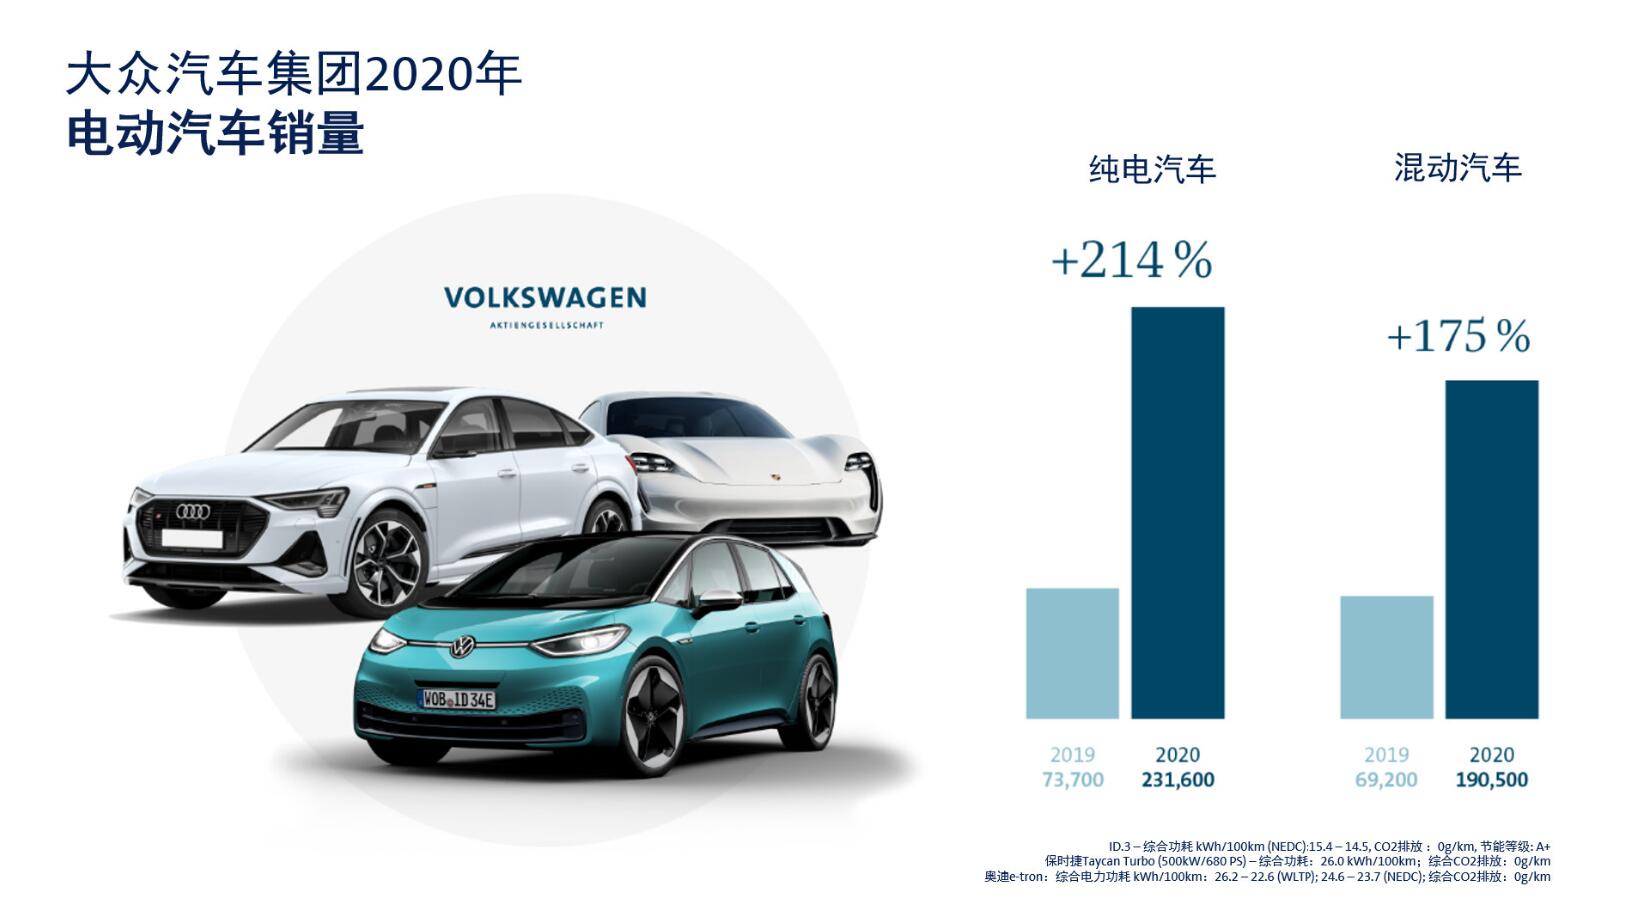 大众集团CEO宣布2021年大众5大品牌将推出10款全新电动车型